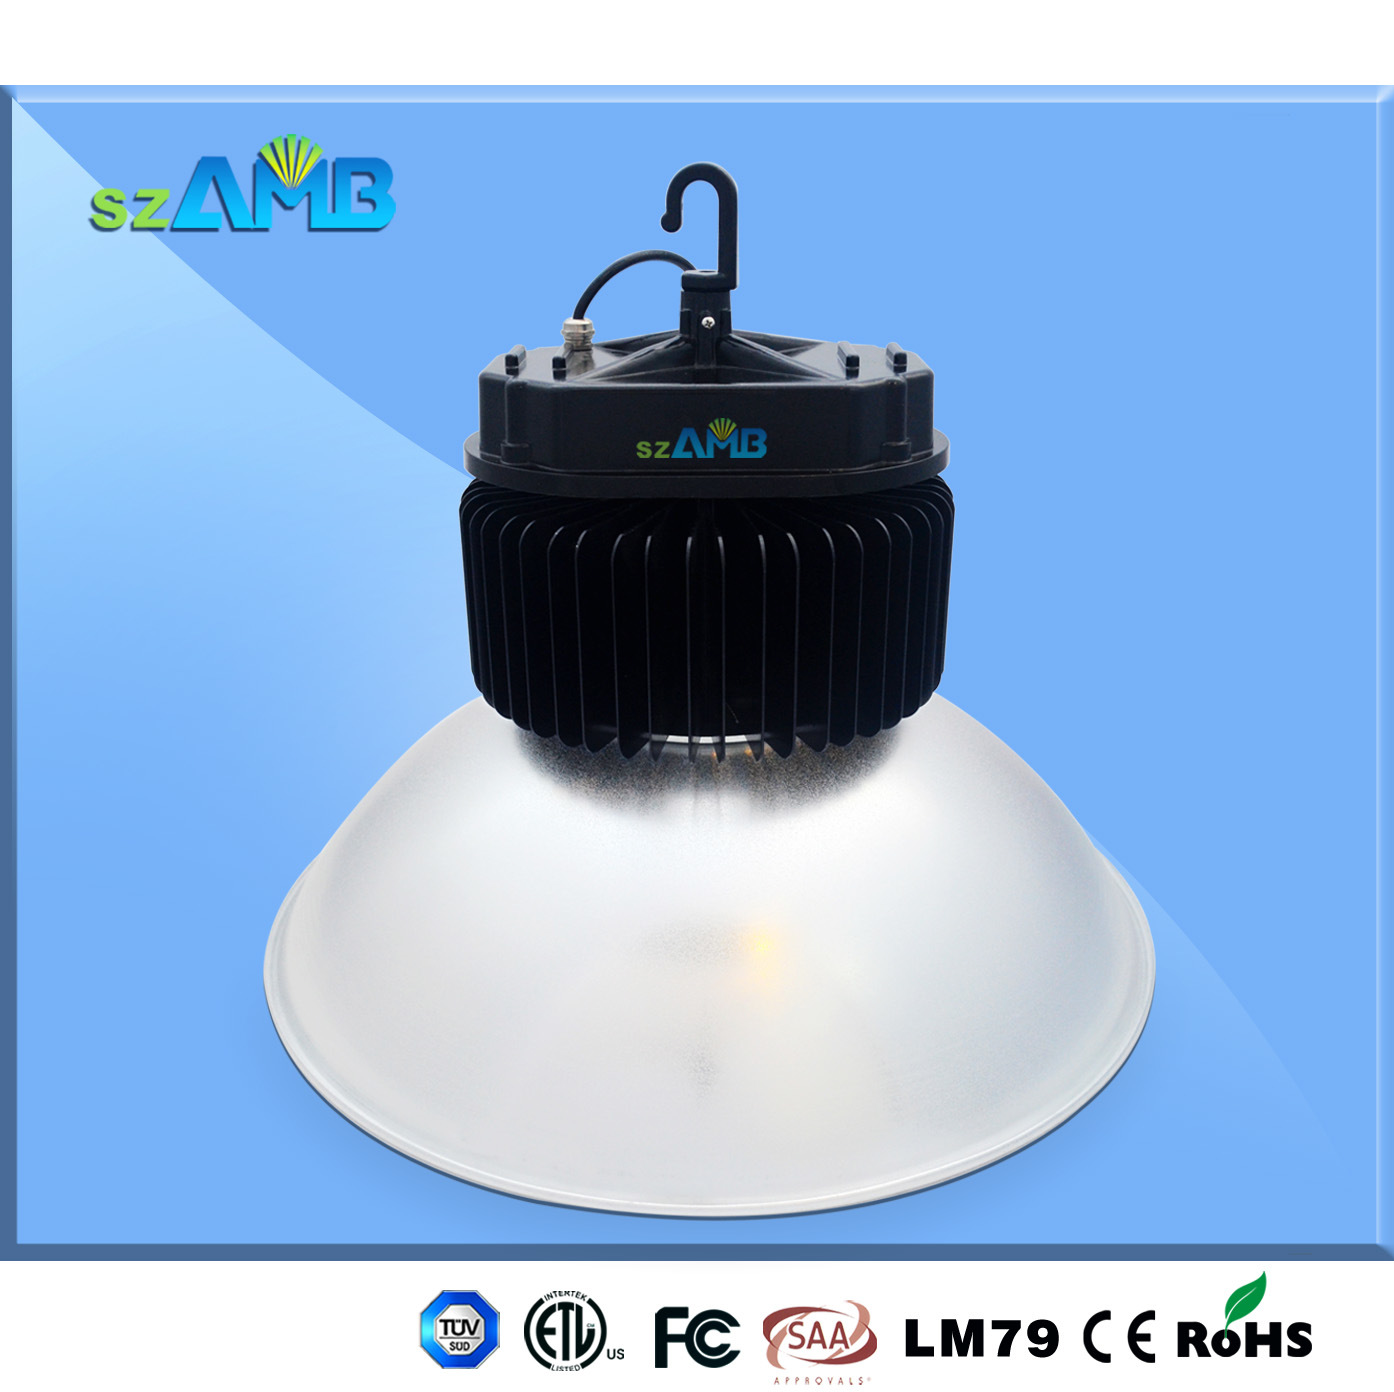 150W Amb LED High Bay (AMB-HBG150-150W)